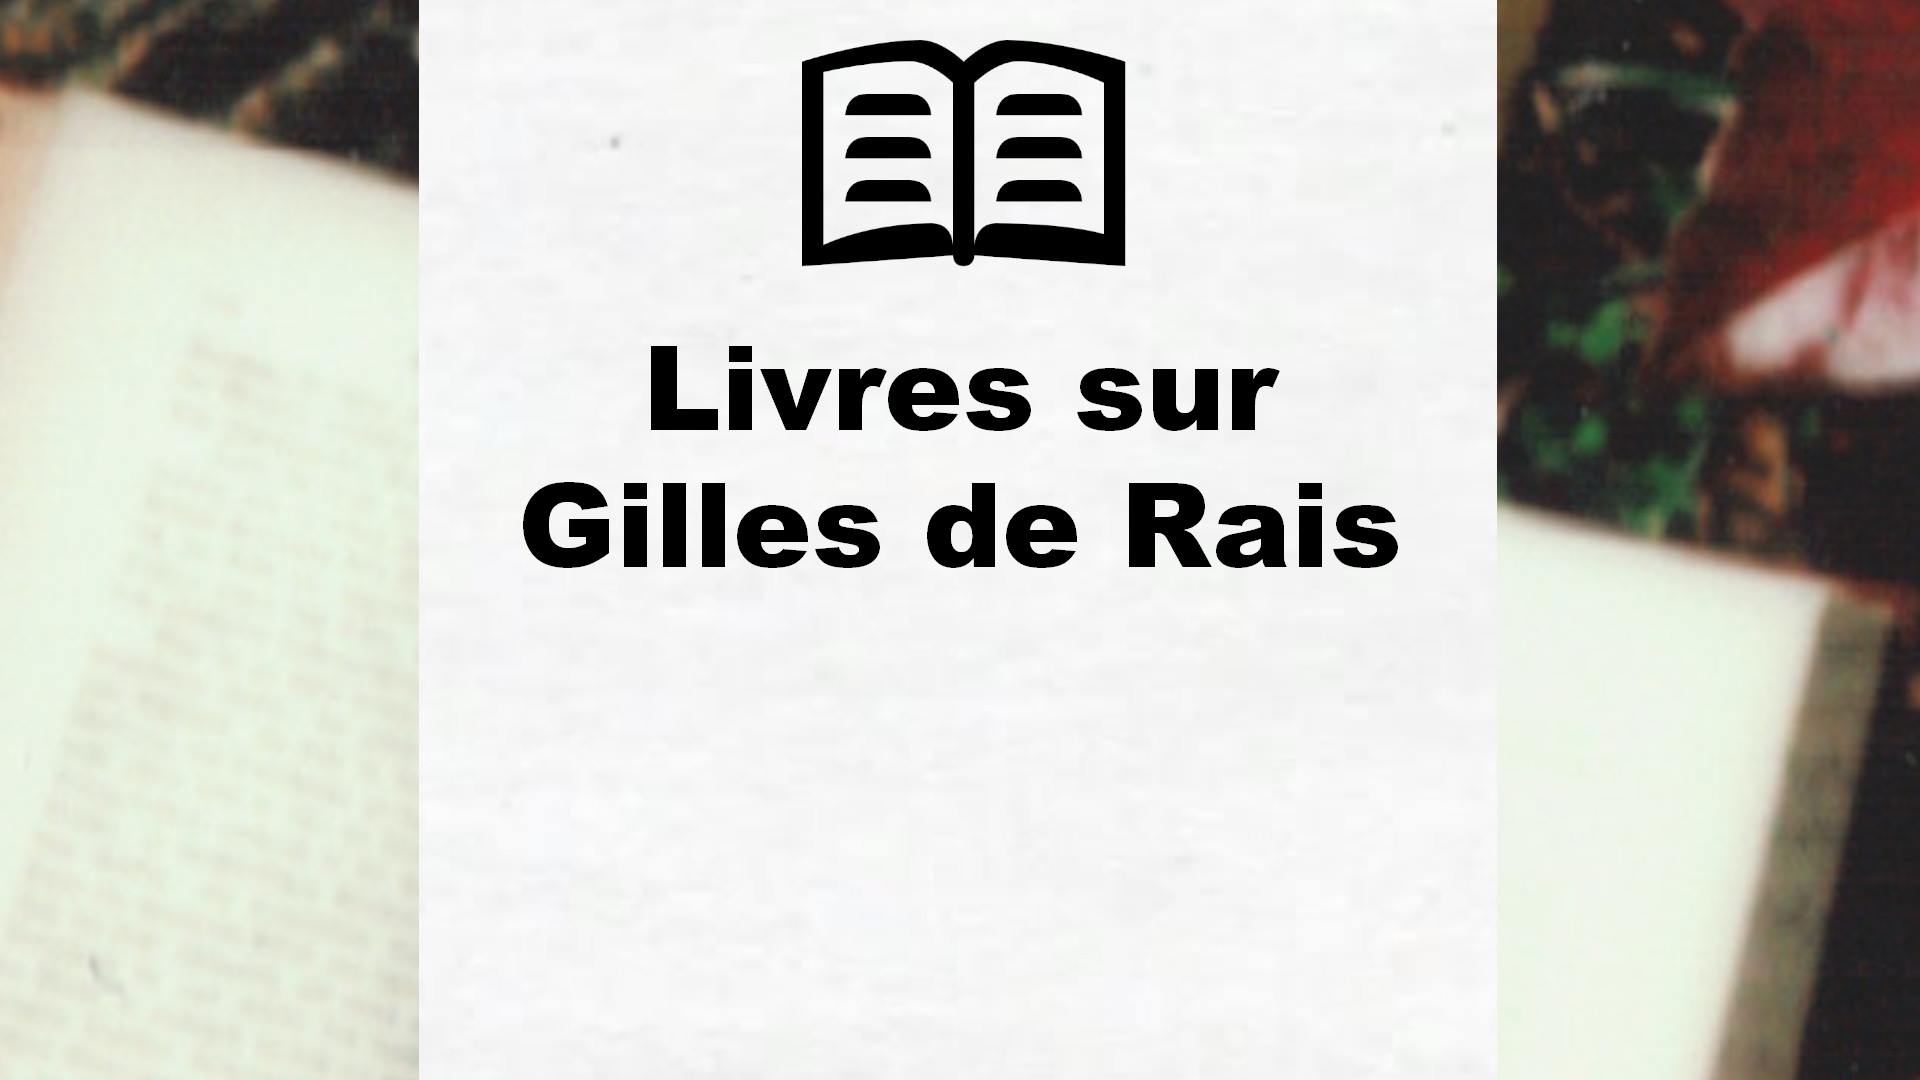 Livres sur Gilles de Rais